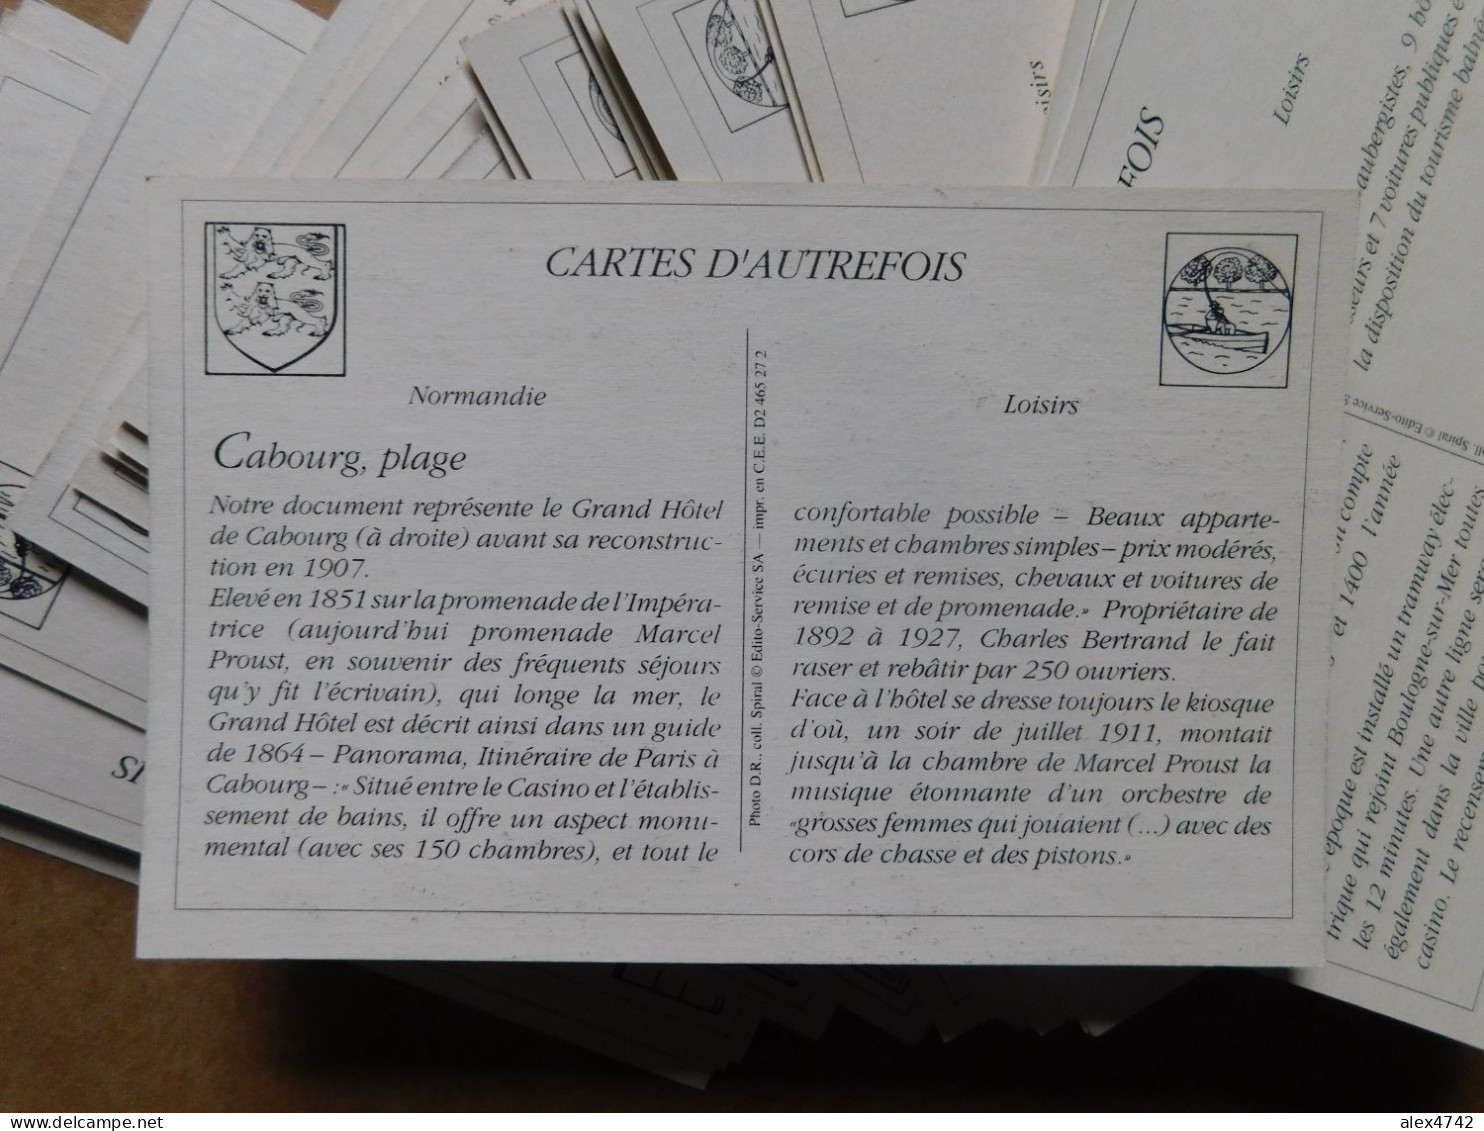 Lot de 404 cartes : France, Collection "Cartes d'autrefois" - 11 thèmes (BoxA)